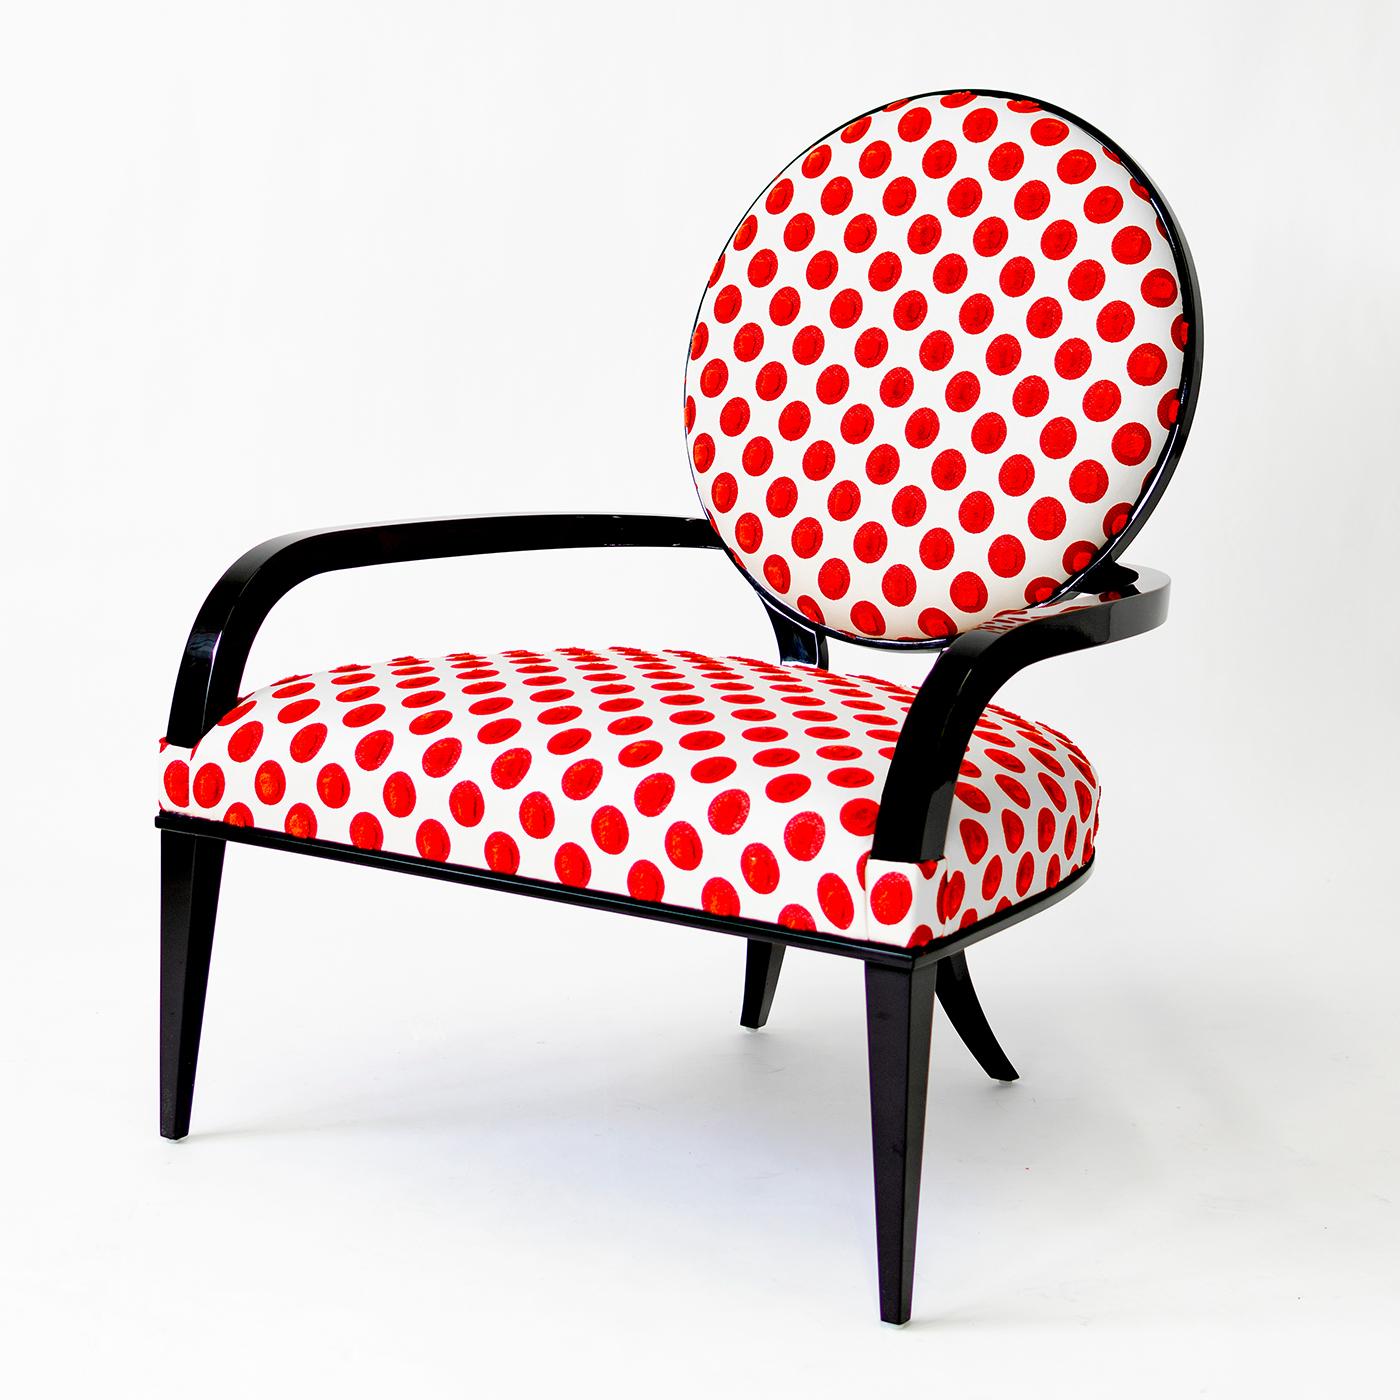 Dieser exklusive Sessel von G. Ventura verbindet eine elegante Silhouette mit einer verspielten Polsterung und ist damit die perfekte Wahl für eine Vielzahl von Innenräumen. Die komplexe Konstruktion zeichnet sich durch eine einladende Form aus, die